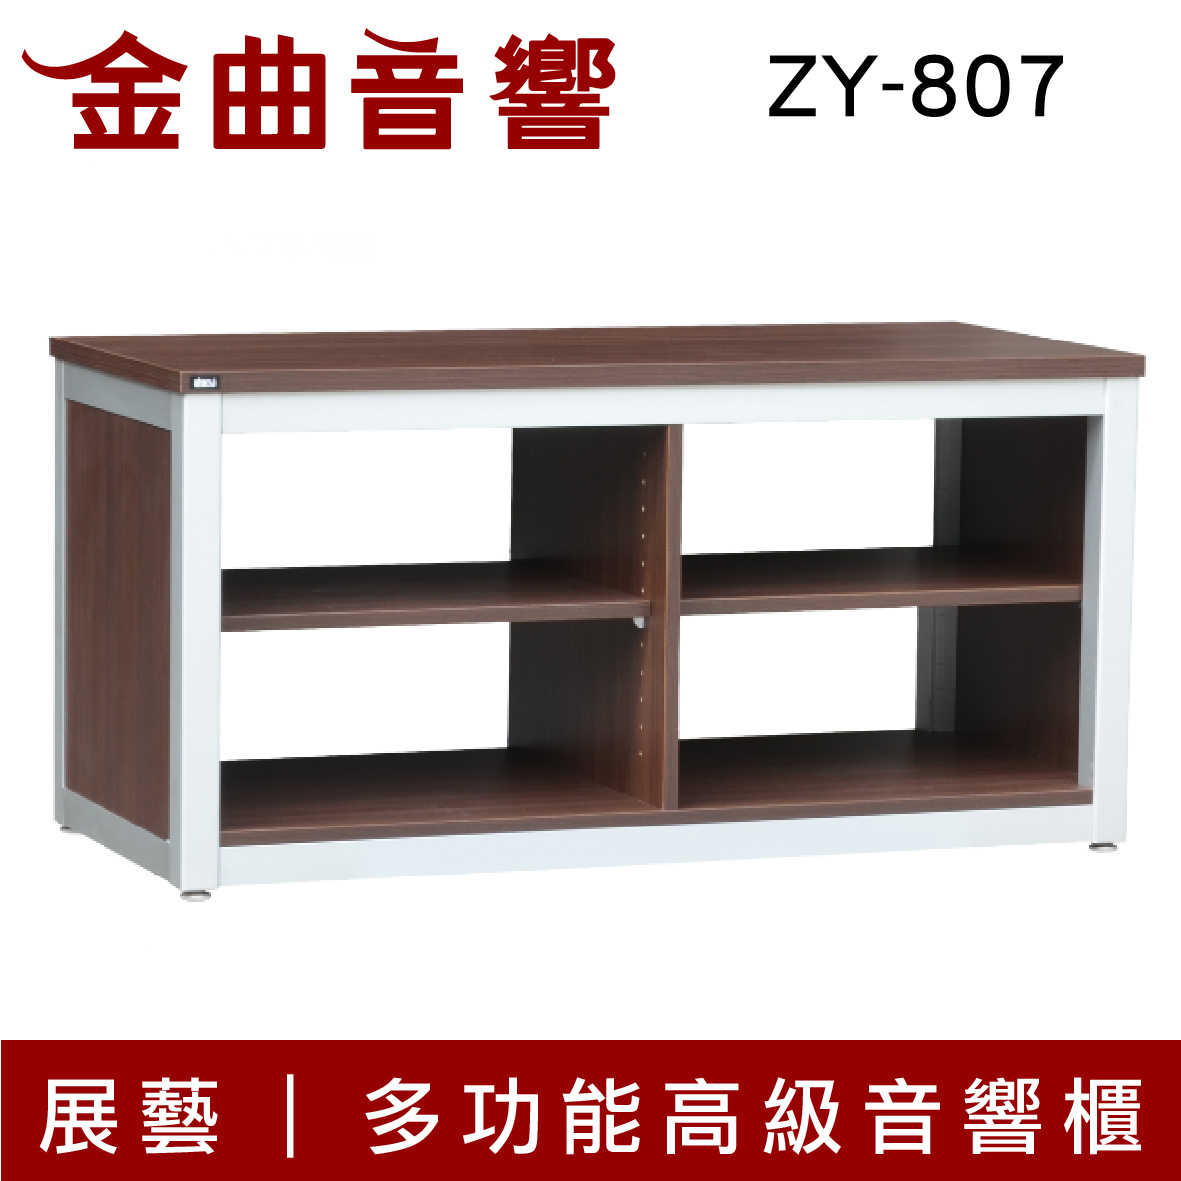 展藝 ZY-807 多功能 高級 音響櫃 | 金曲音響